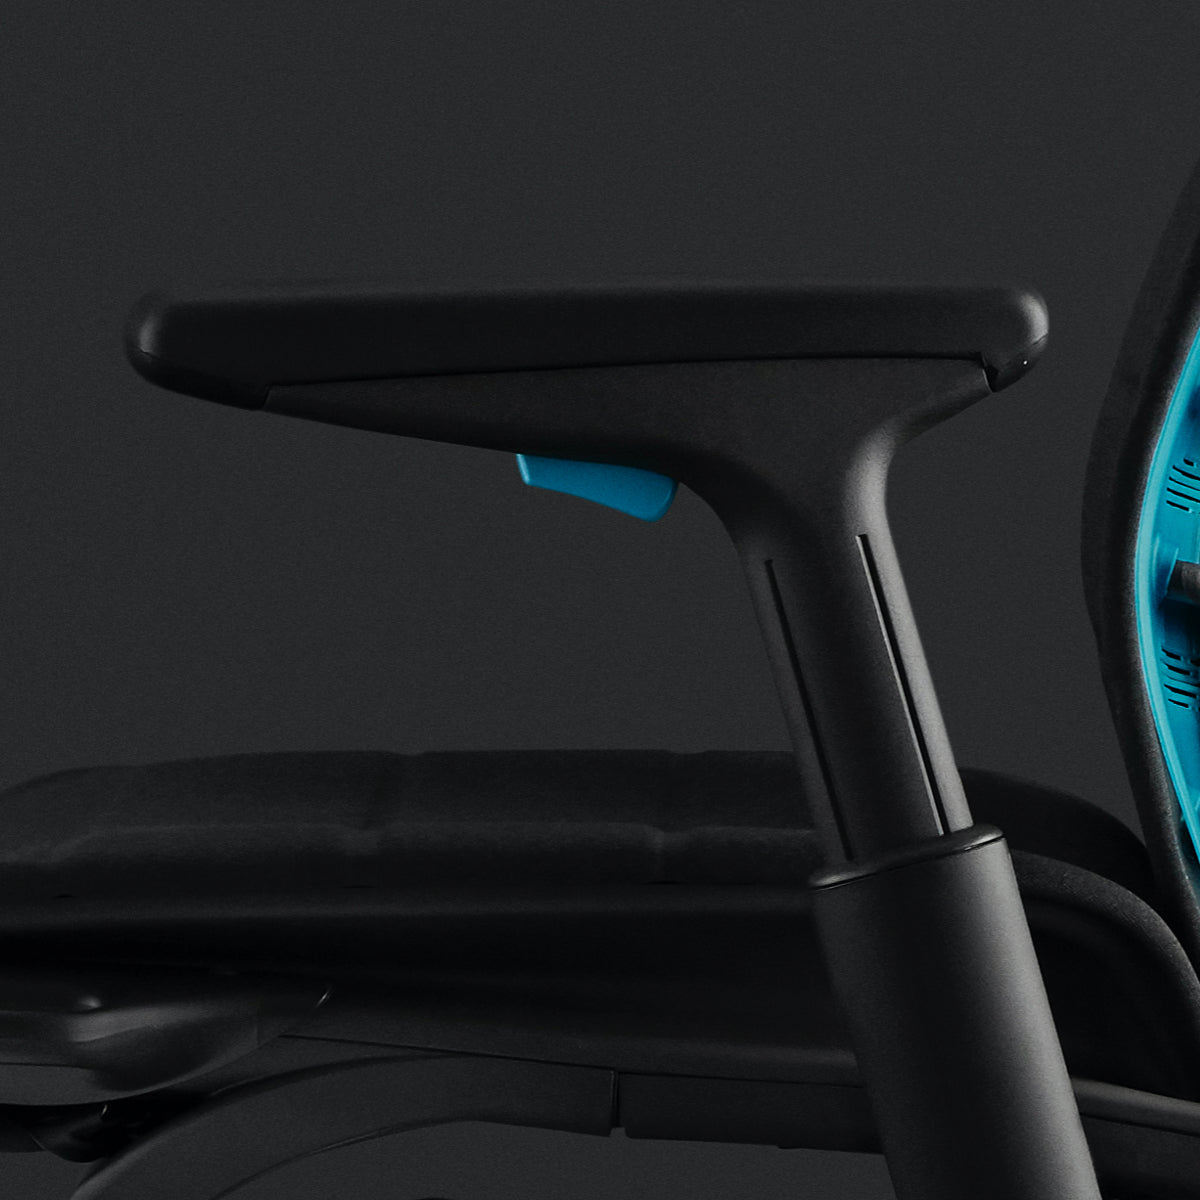 Embody电竞椅左侧扶手上的黑色注塑泡沫特写。同时也展示了黑色背景中座椅上的青蓝色调整器和青蓝色靠背。